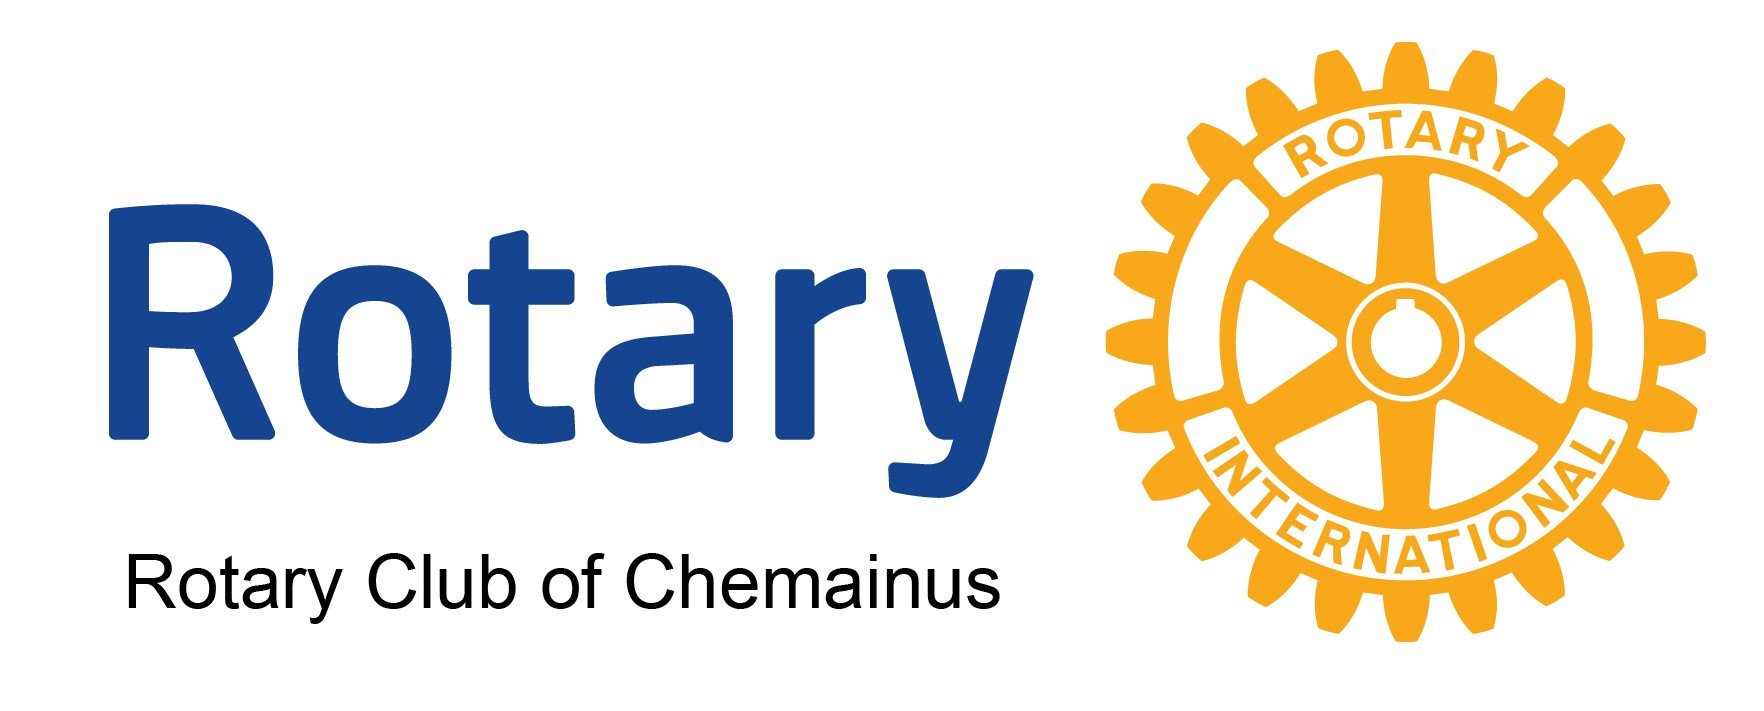 Rotary-Club-logo.jpg